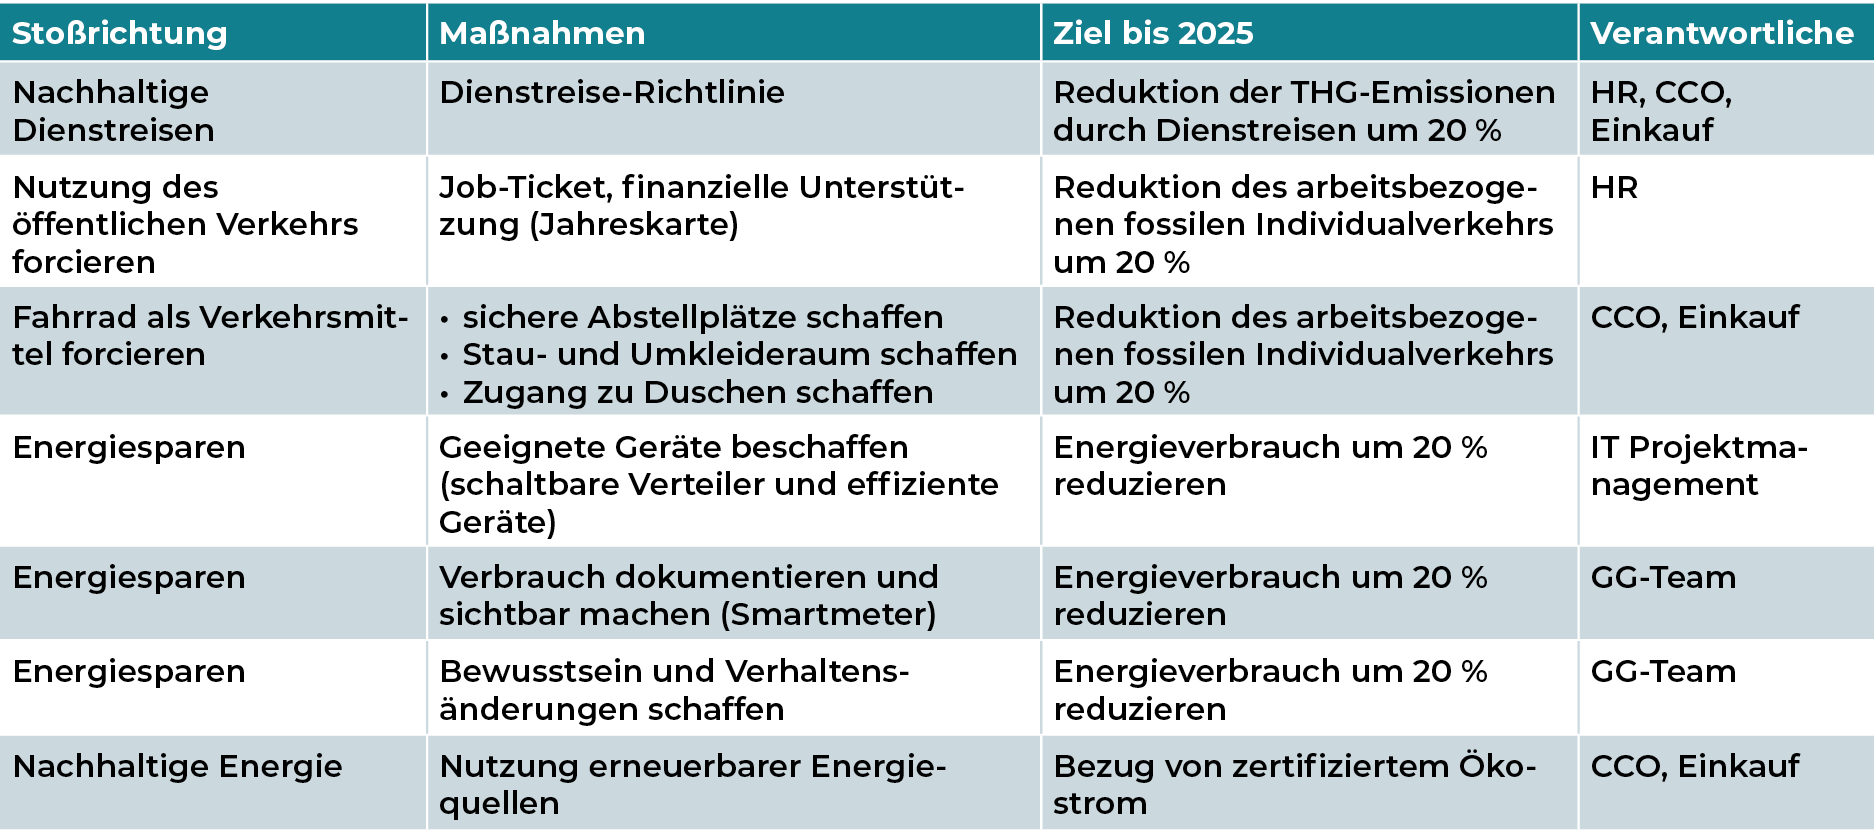 Mediengruppe Wiener Zeitung Nachhaltigkeitsbericht 2023 - mgwznb_reduktion-dertreibhausgase_modal